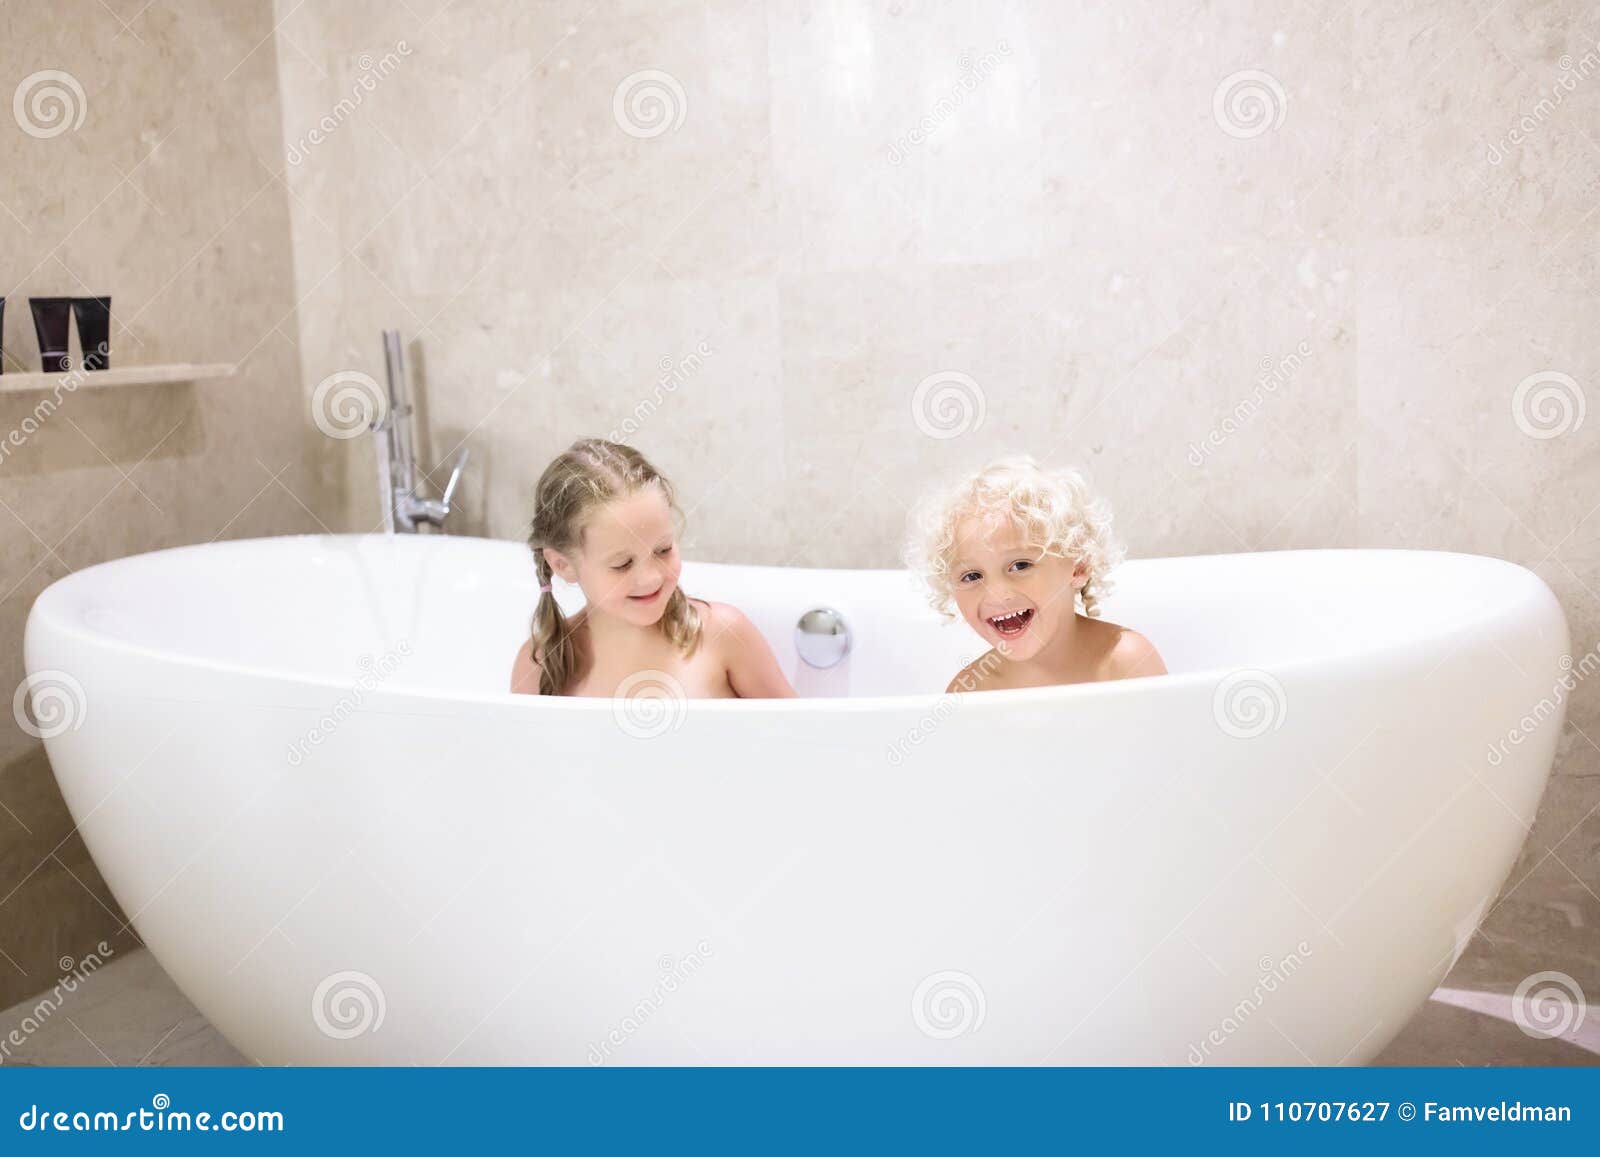 Русские купаются в ванной. Дети моются в ванной. Ванная для детей. Дети купаются в ванной. Разнополые дети в ванной.